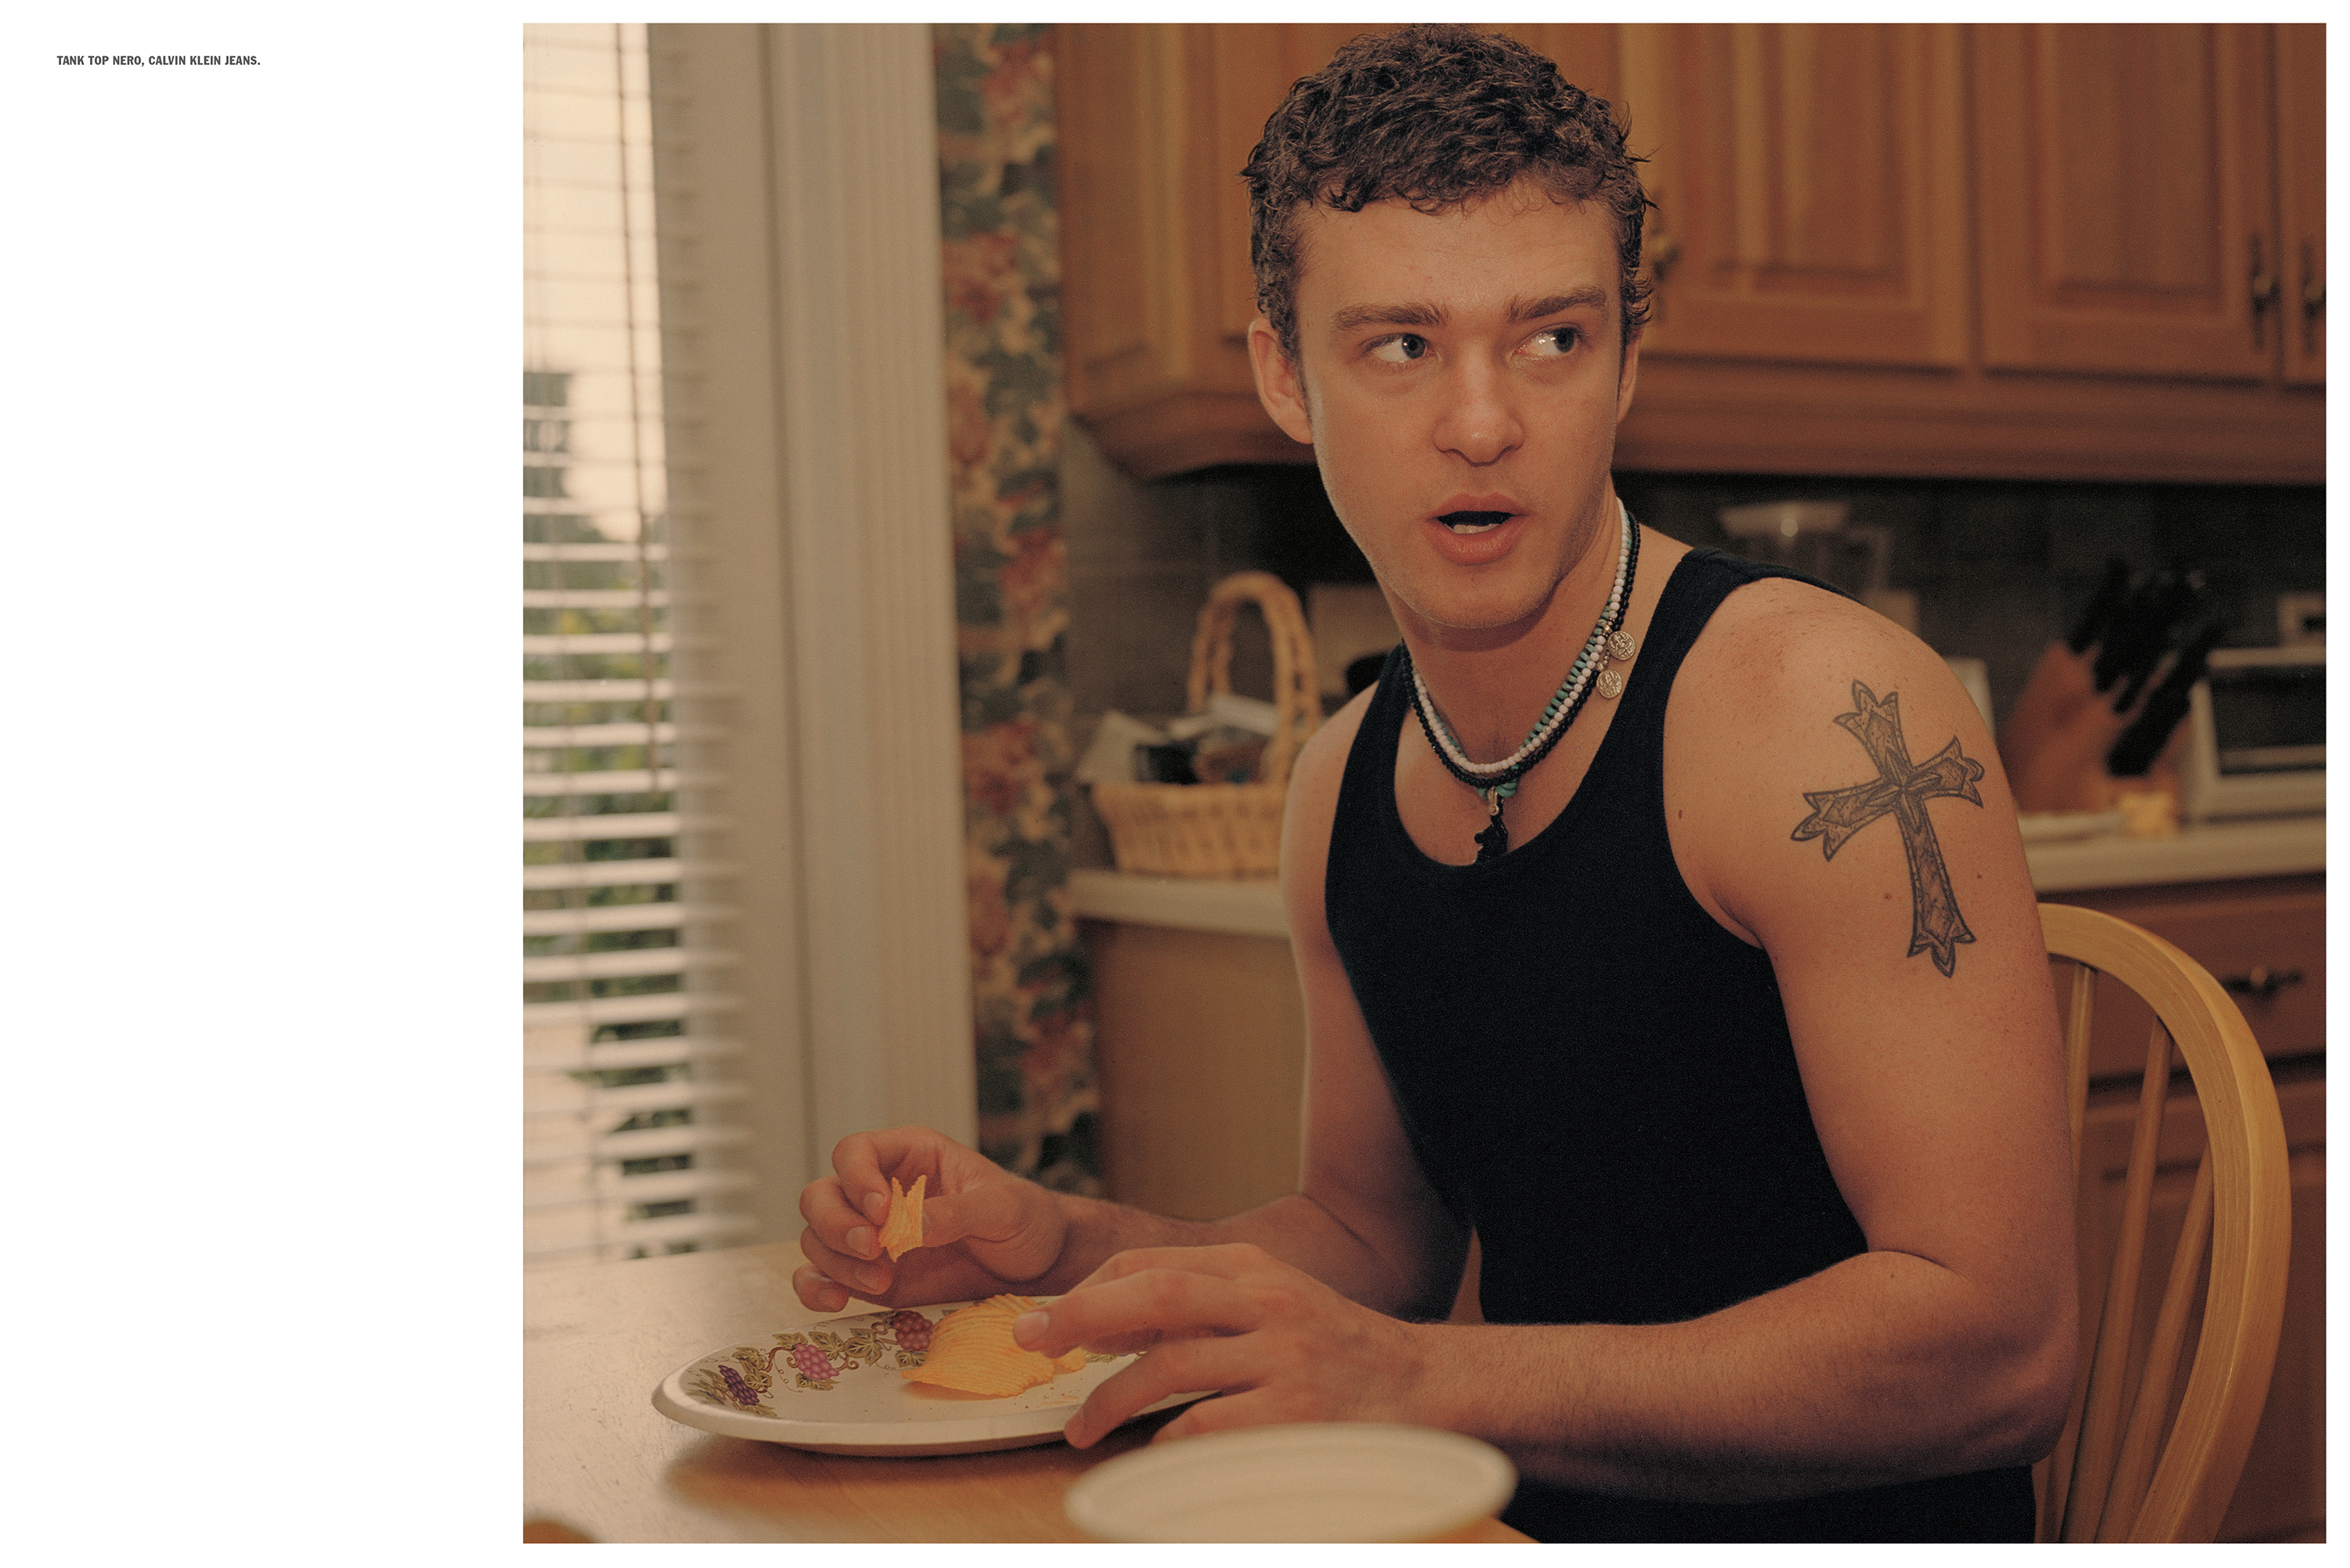 Justin Timberlake: At Home, L'Uomo Vogue November 2002 – Steven Klein